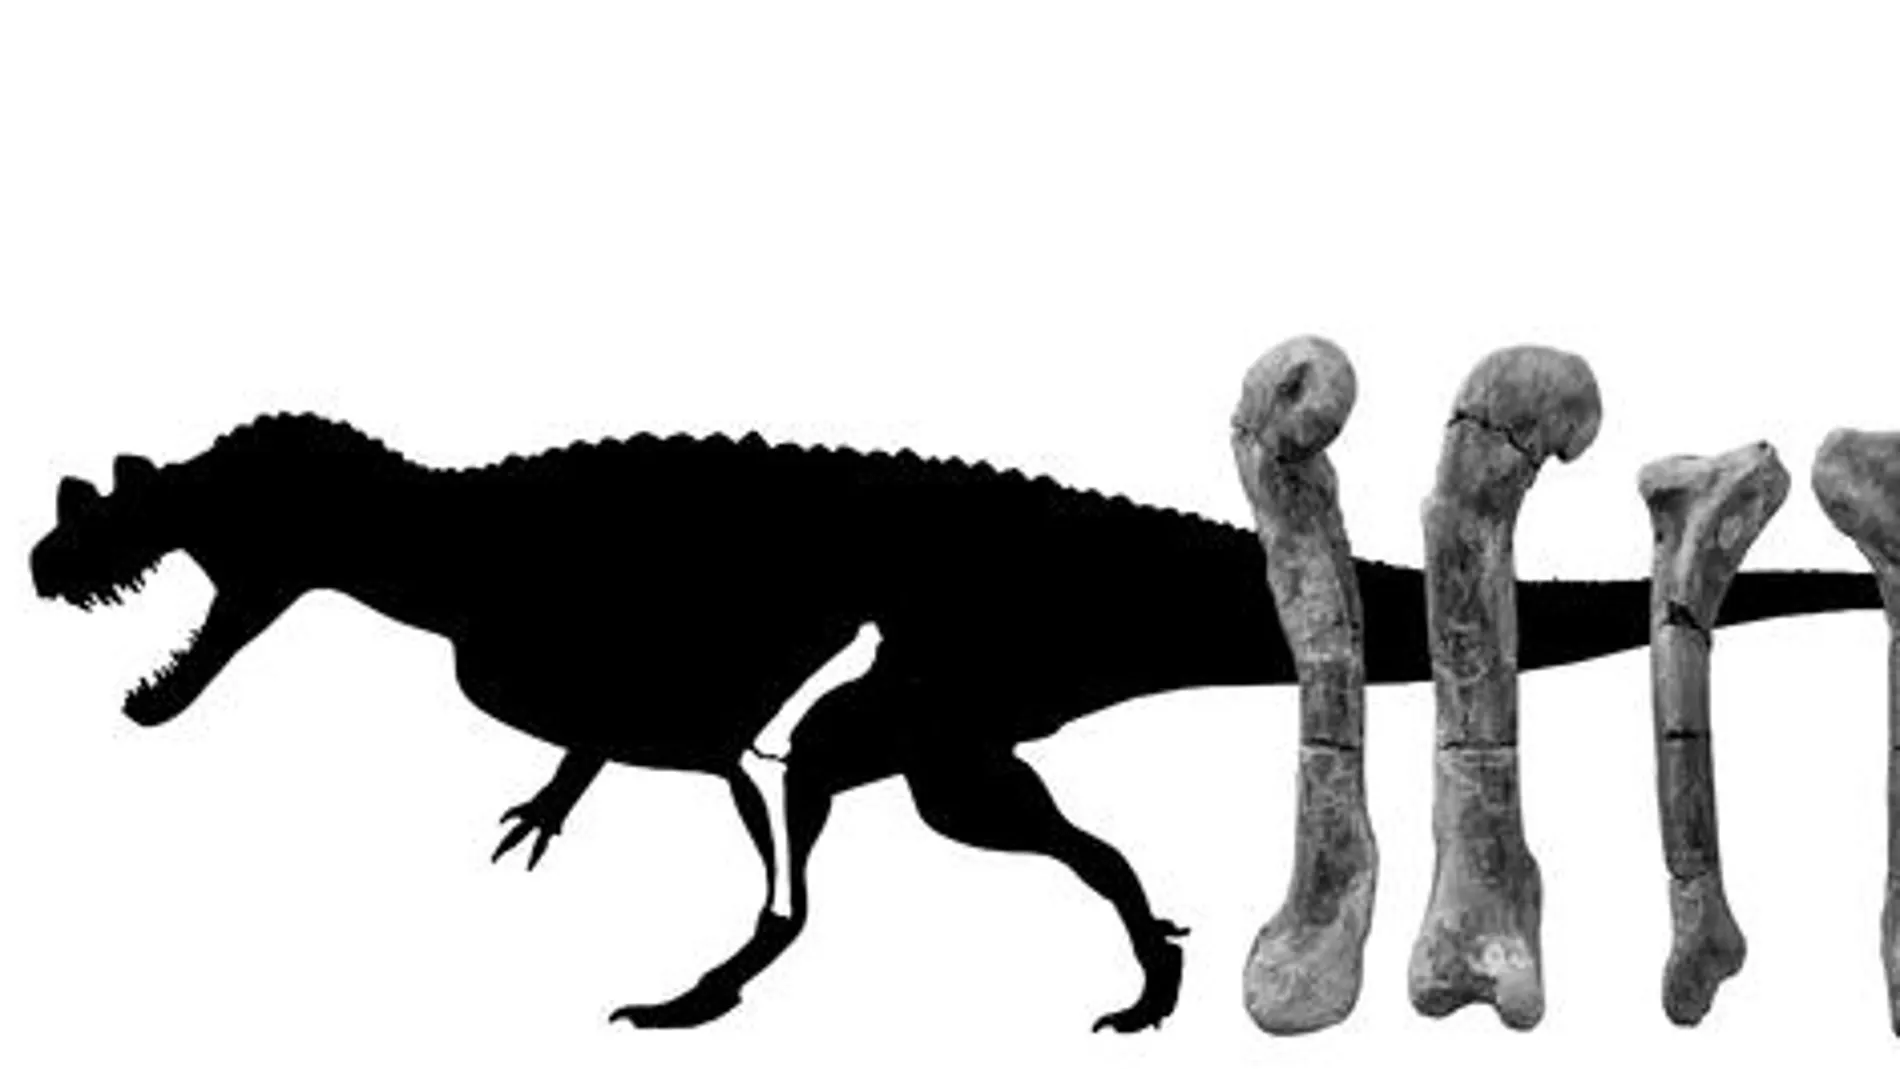 Silueta del 'Ceratosaurus' a escala e imagen del fémur y la tibia del ejemplar portugués